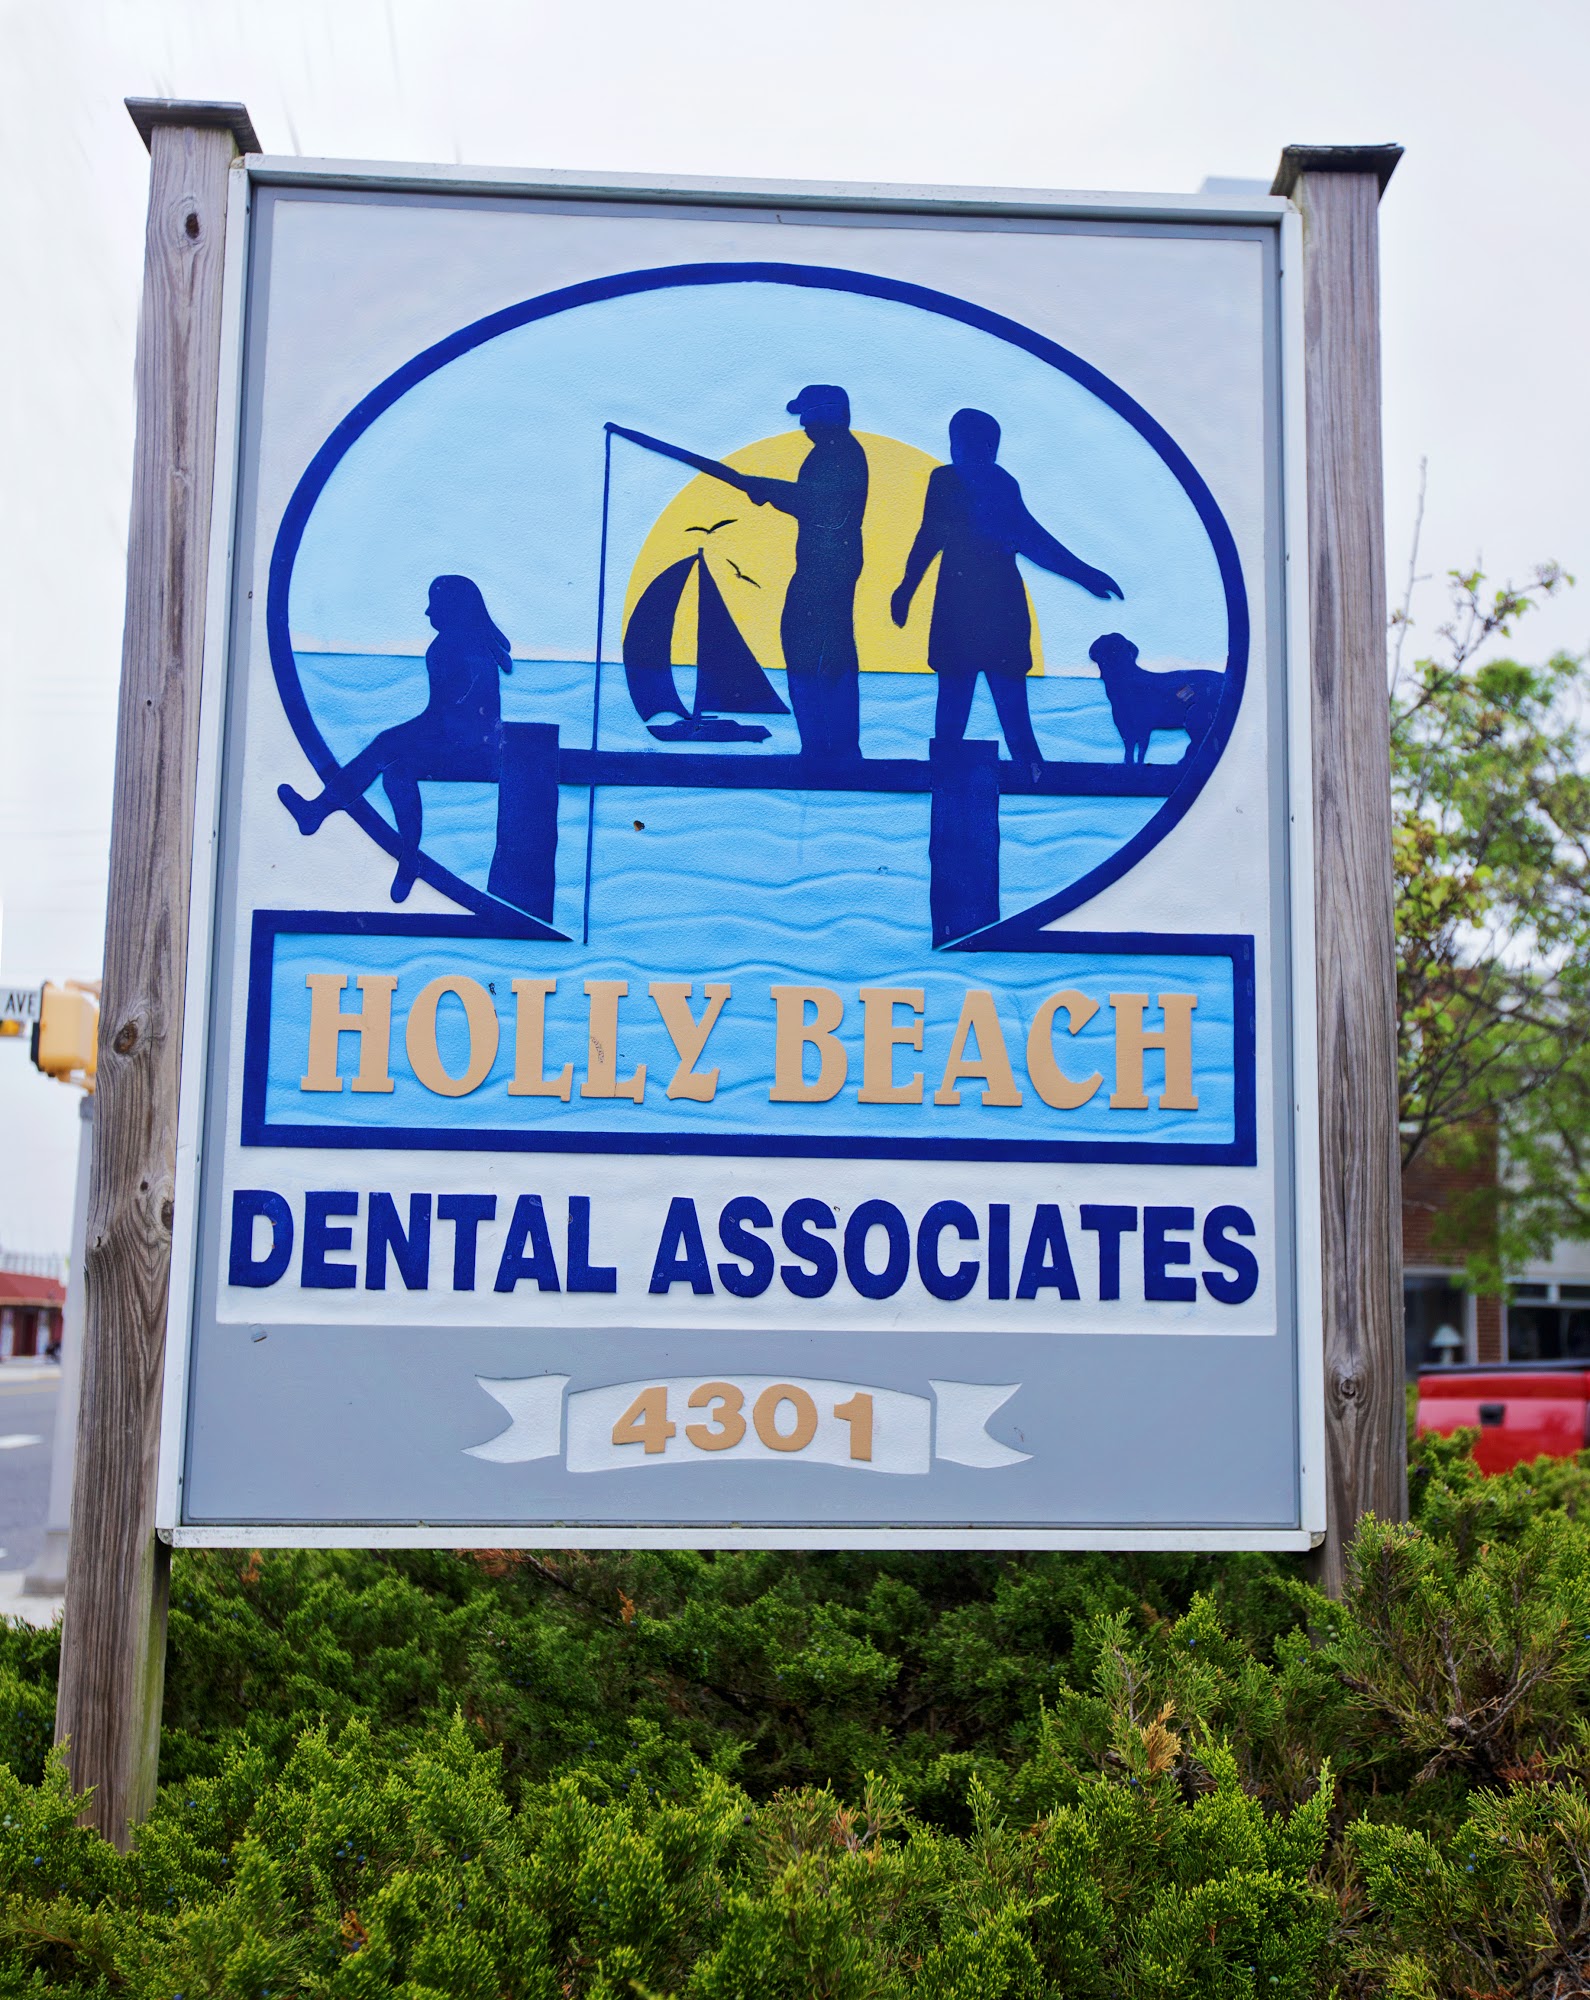 Holly Beach Dental Associates